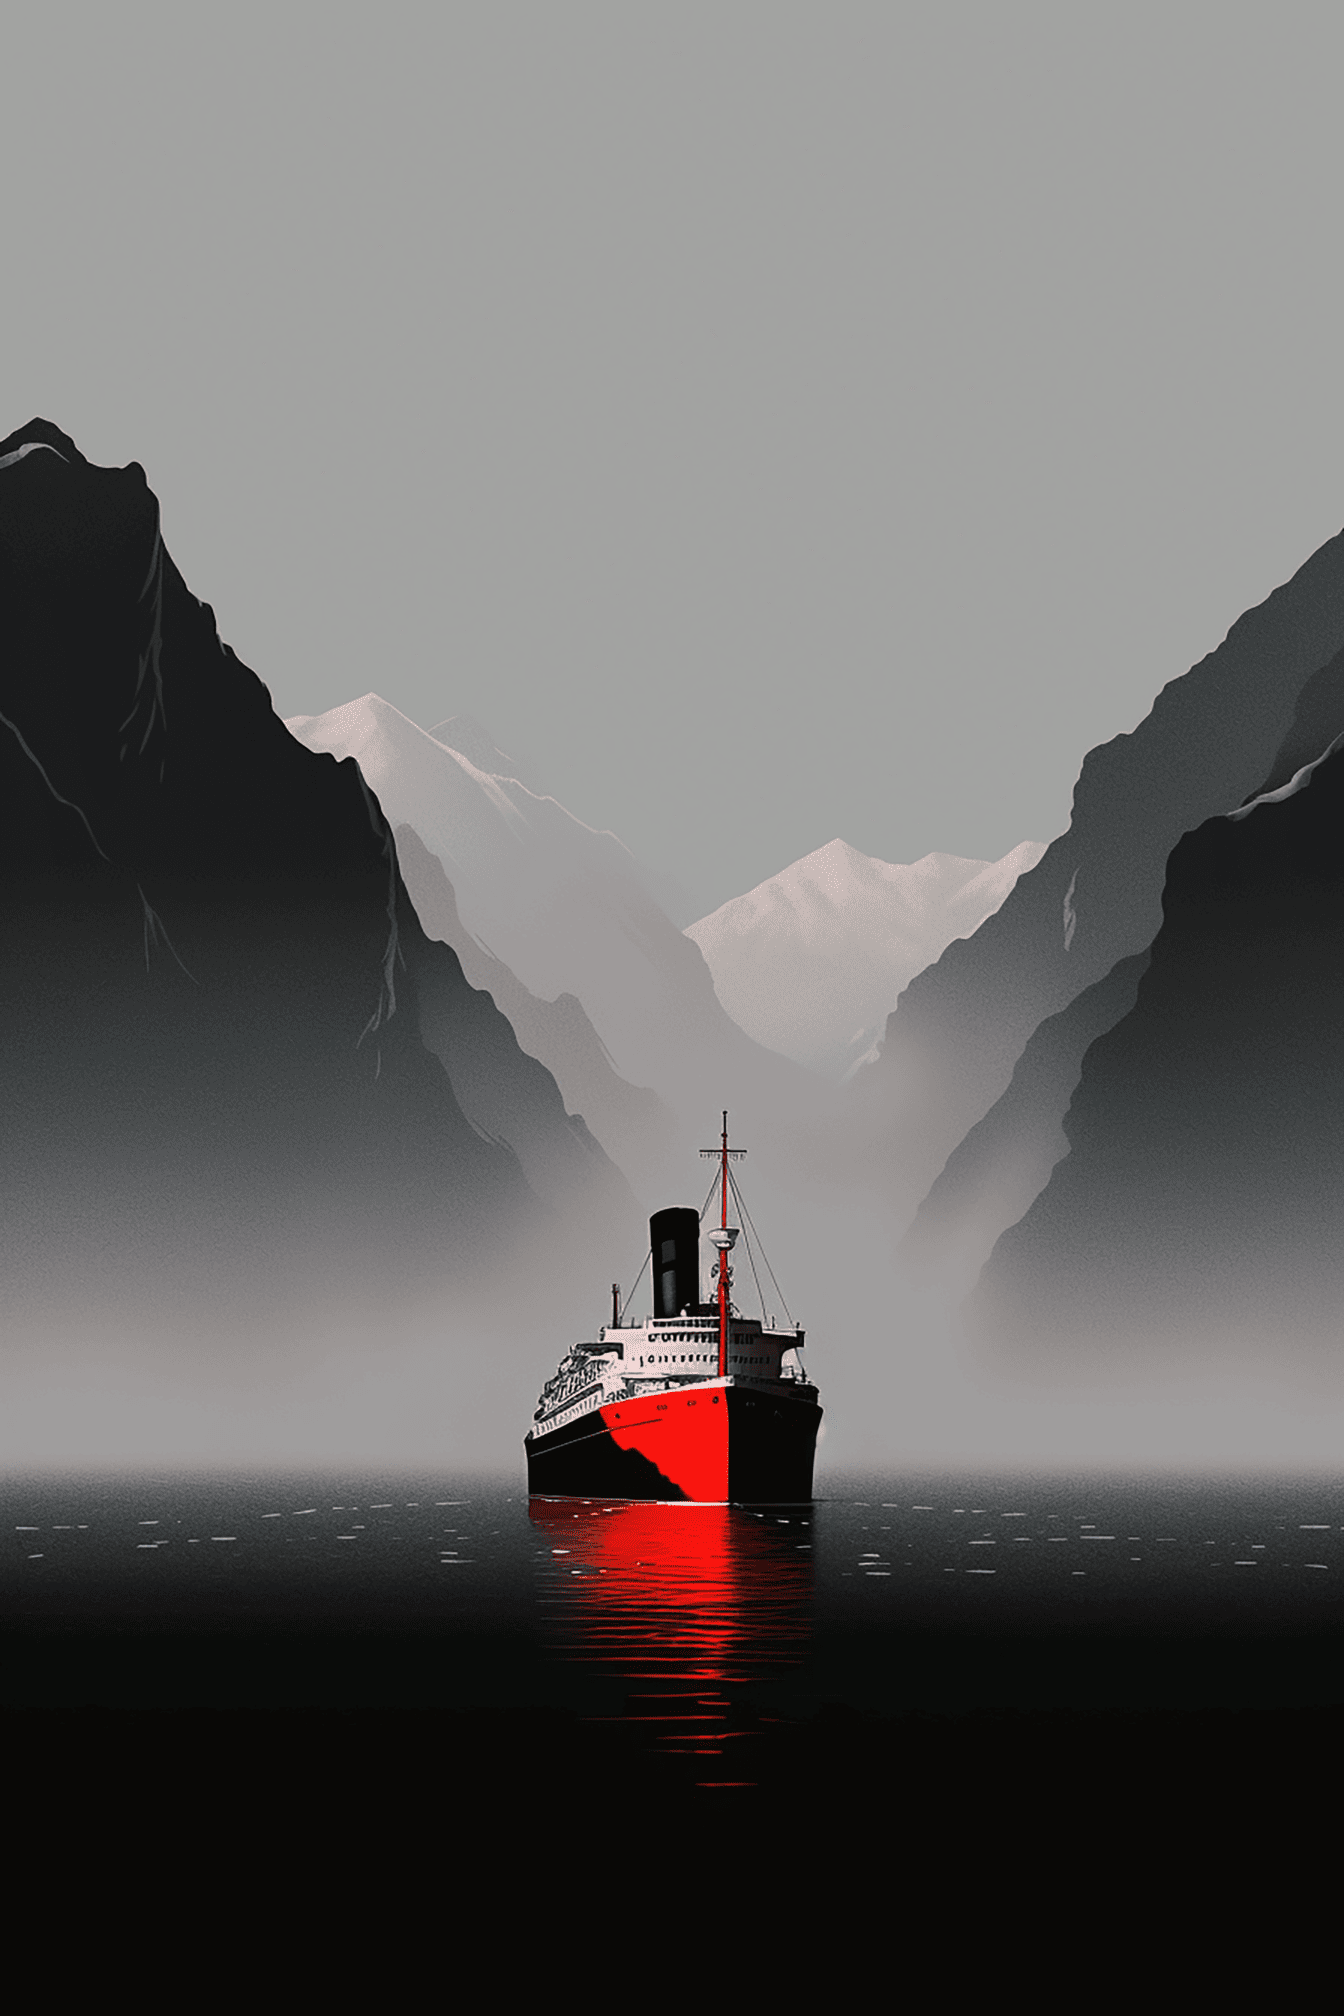 Vektorillustration av kryssningsfartyg i bukt med berg som bakgrund